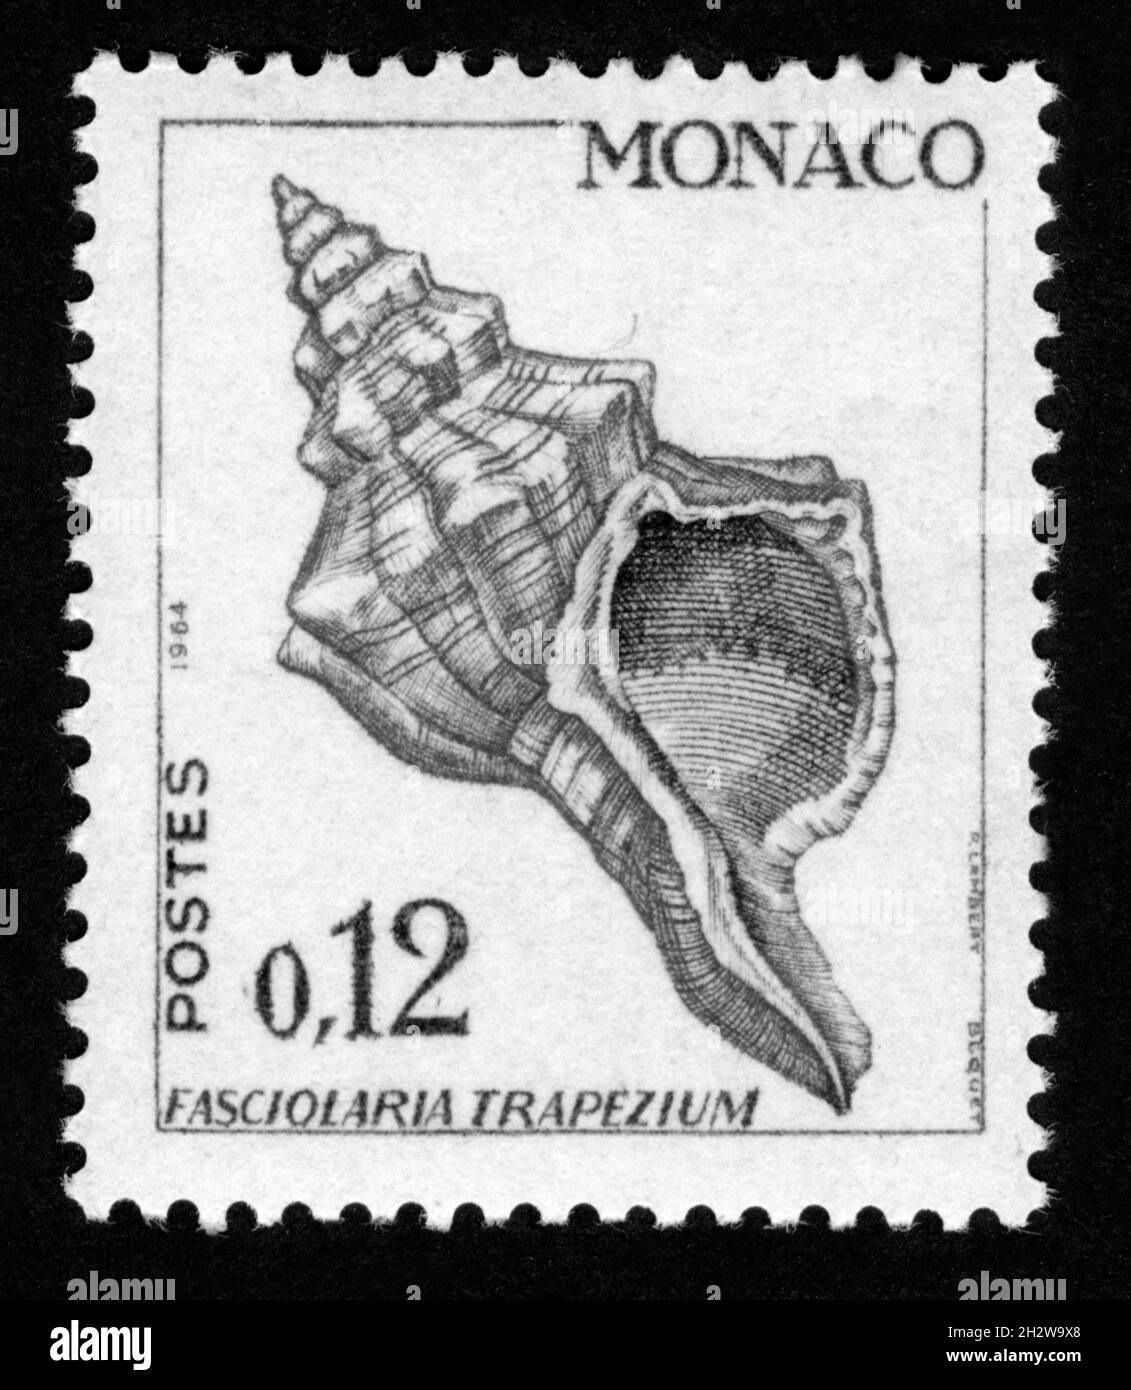 Stamp print in Monaco,Fasciolaria trapezium,shell, clam Stock Photo